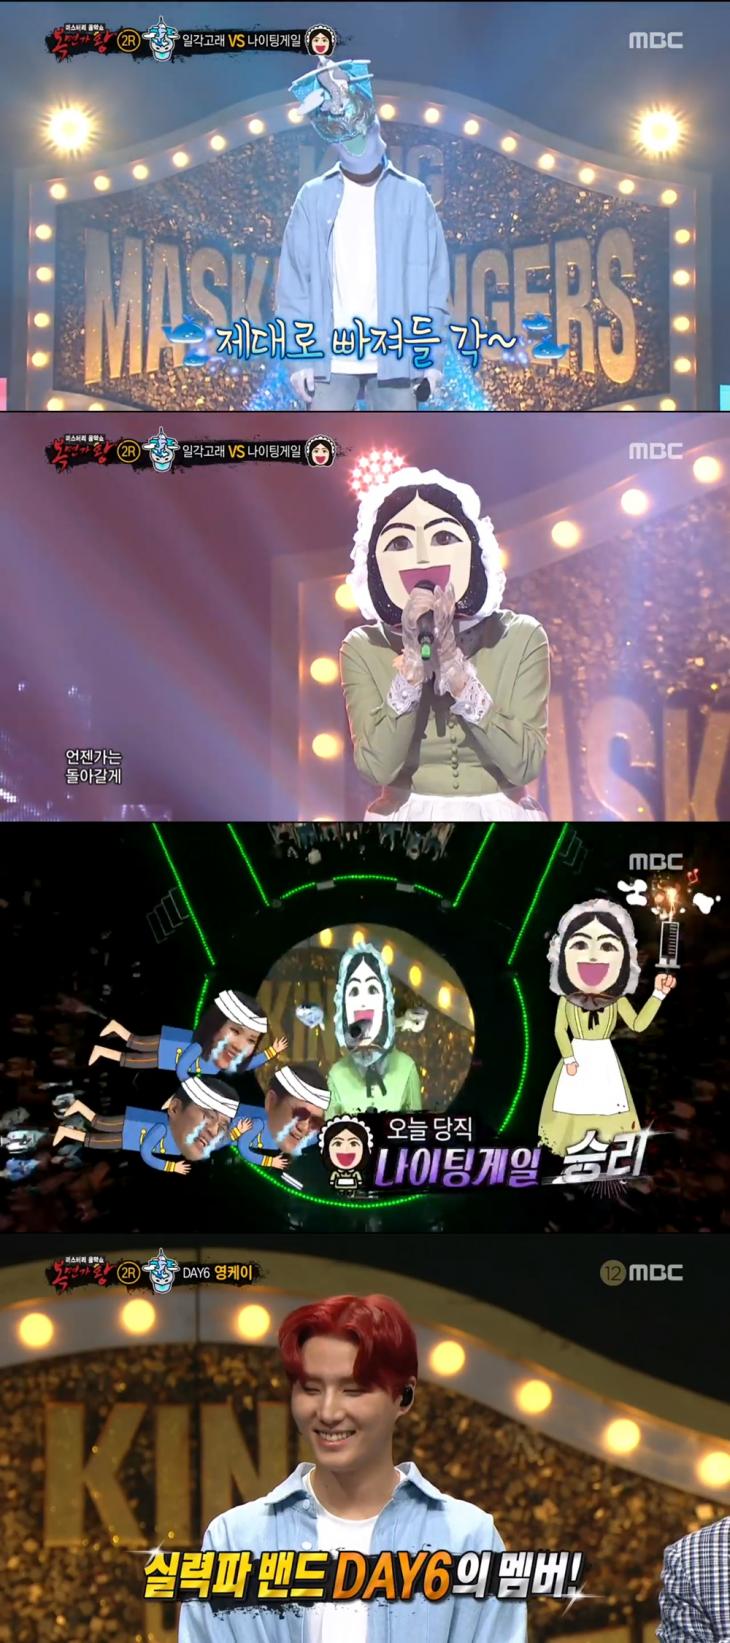 MBC '복면가왕' 방송 캡쳐